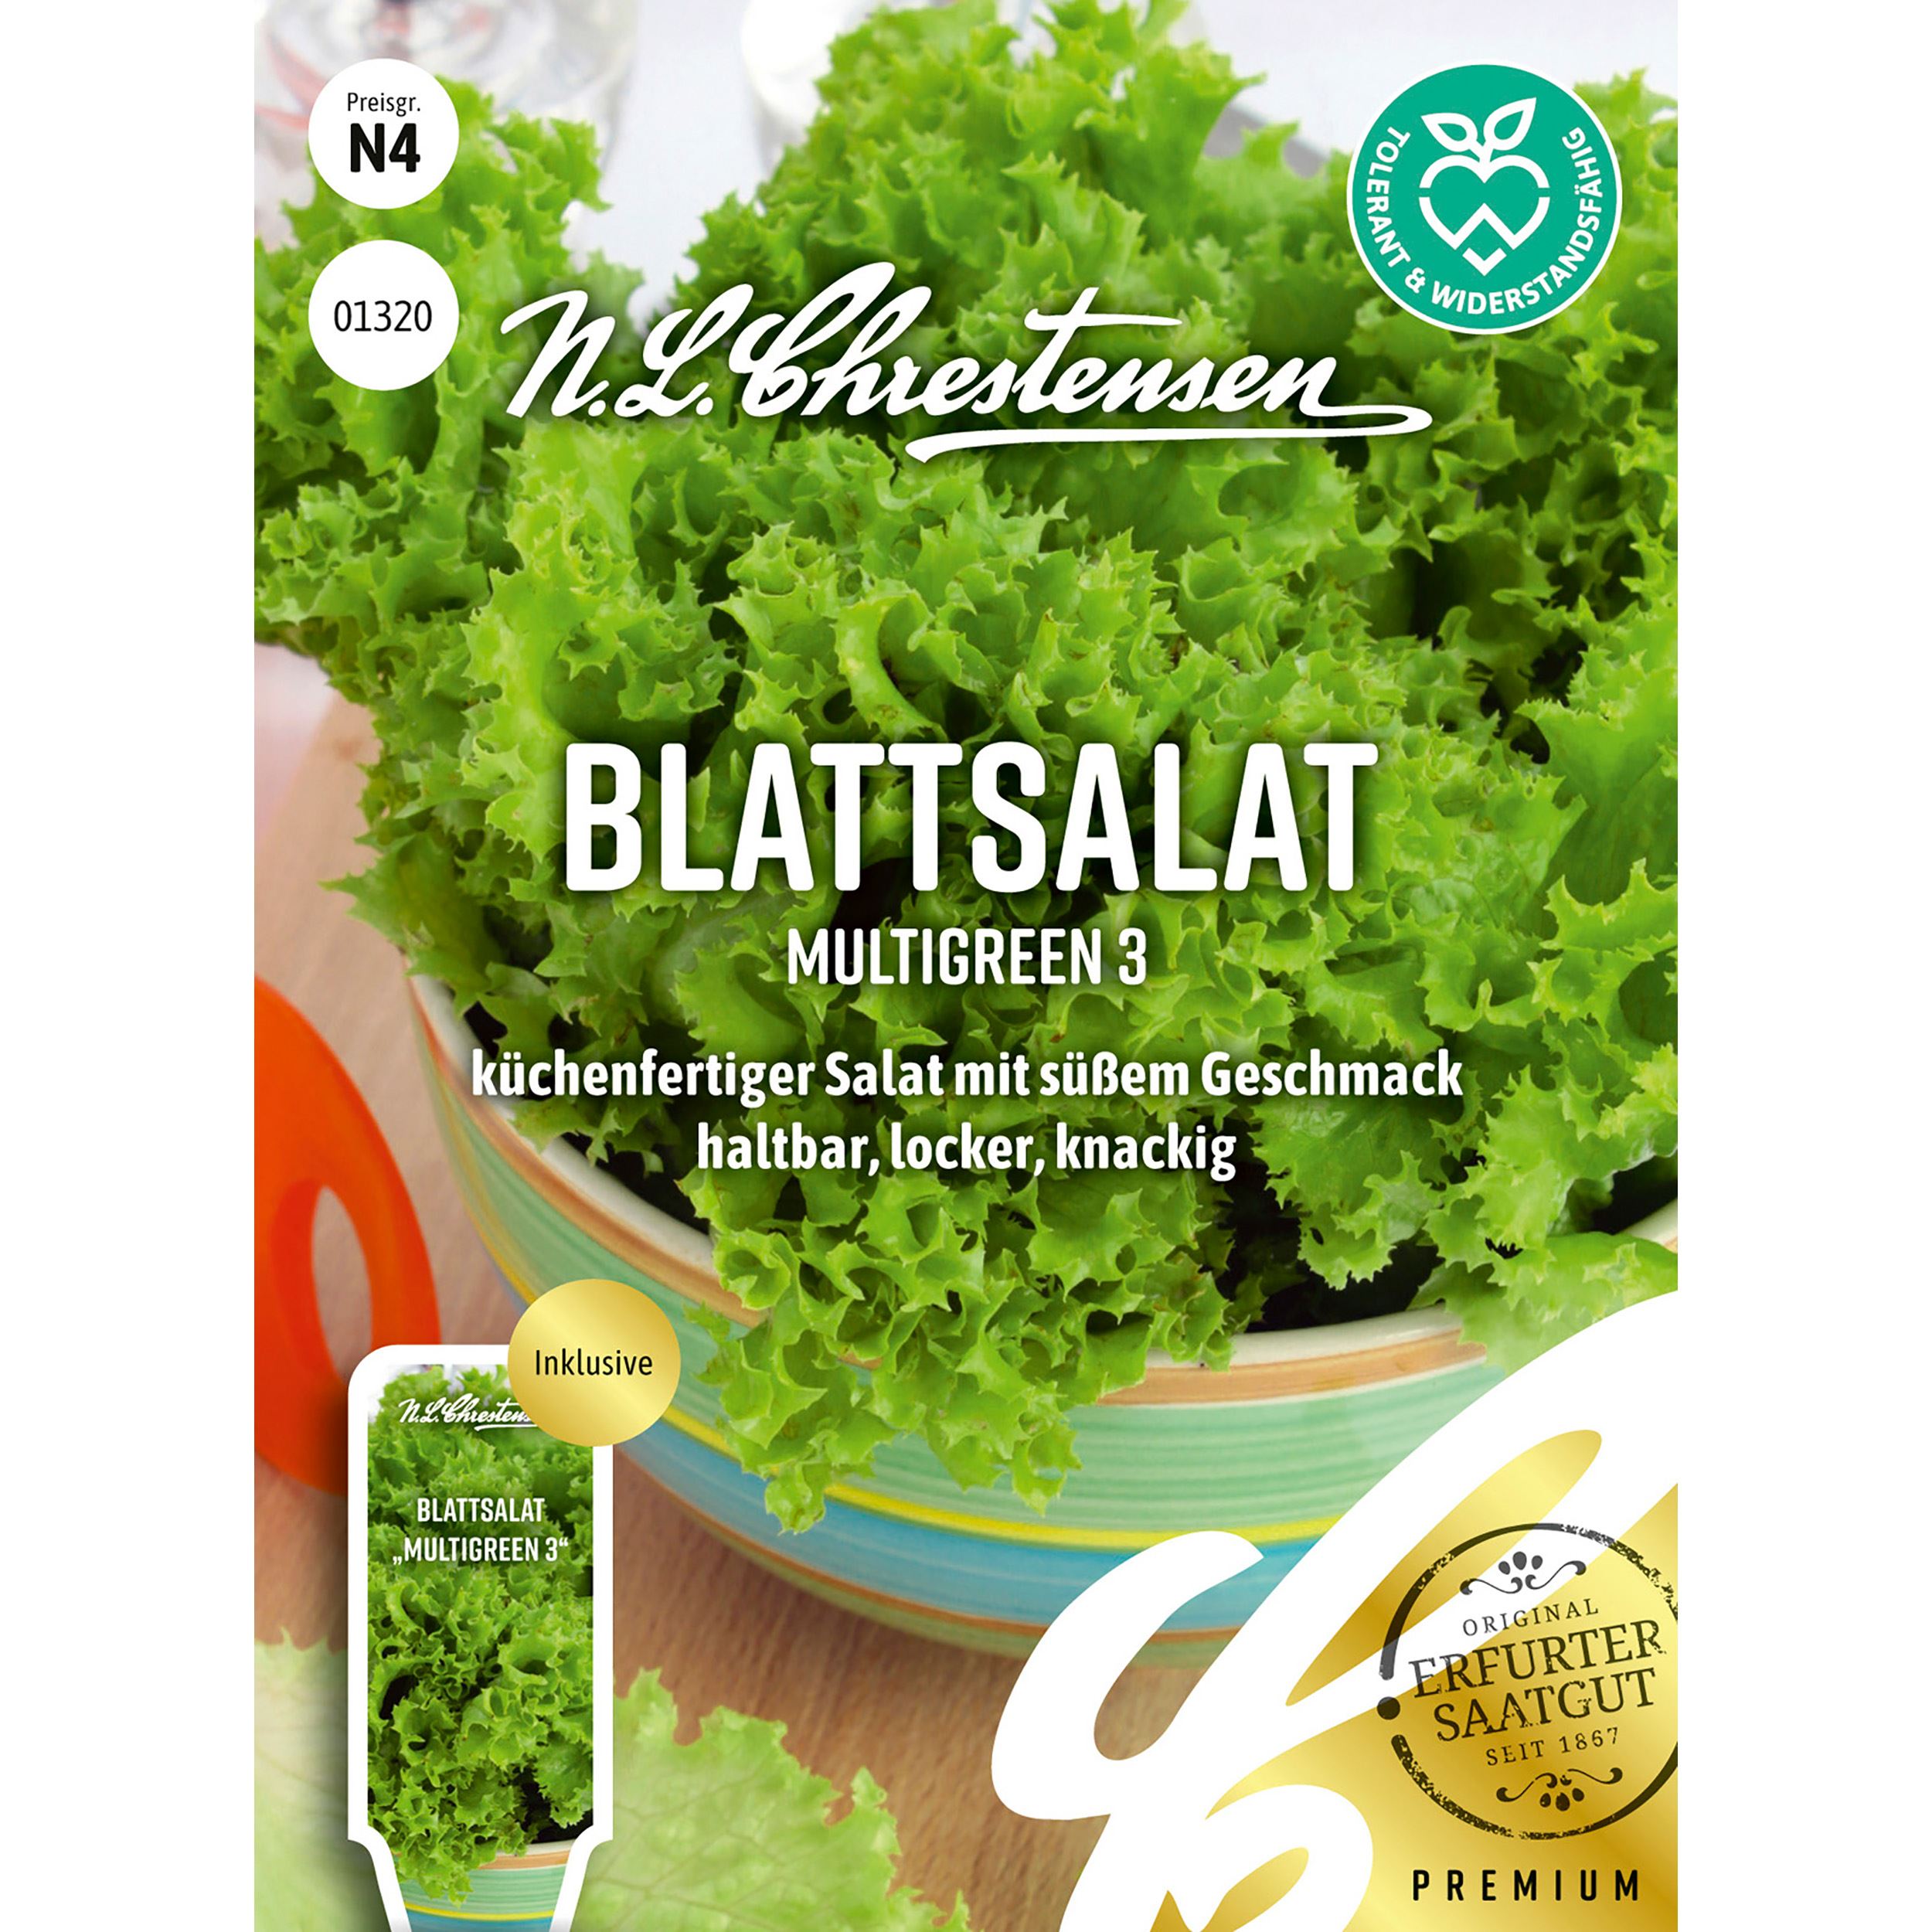 Blattsalat Multigreen 3